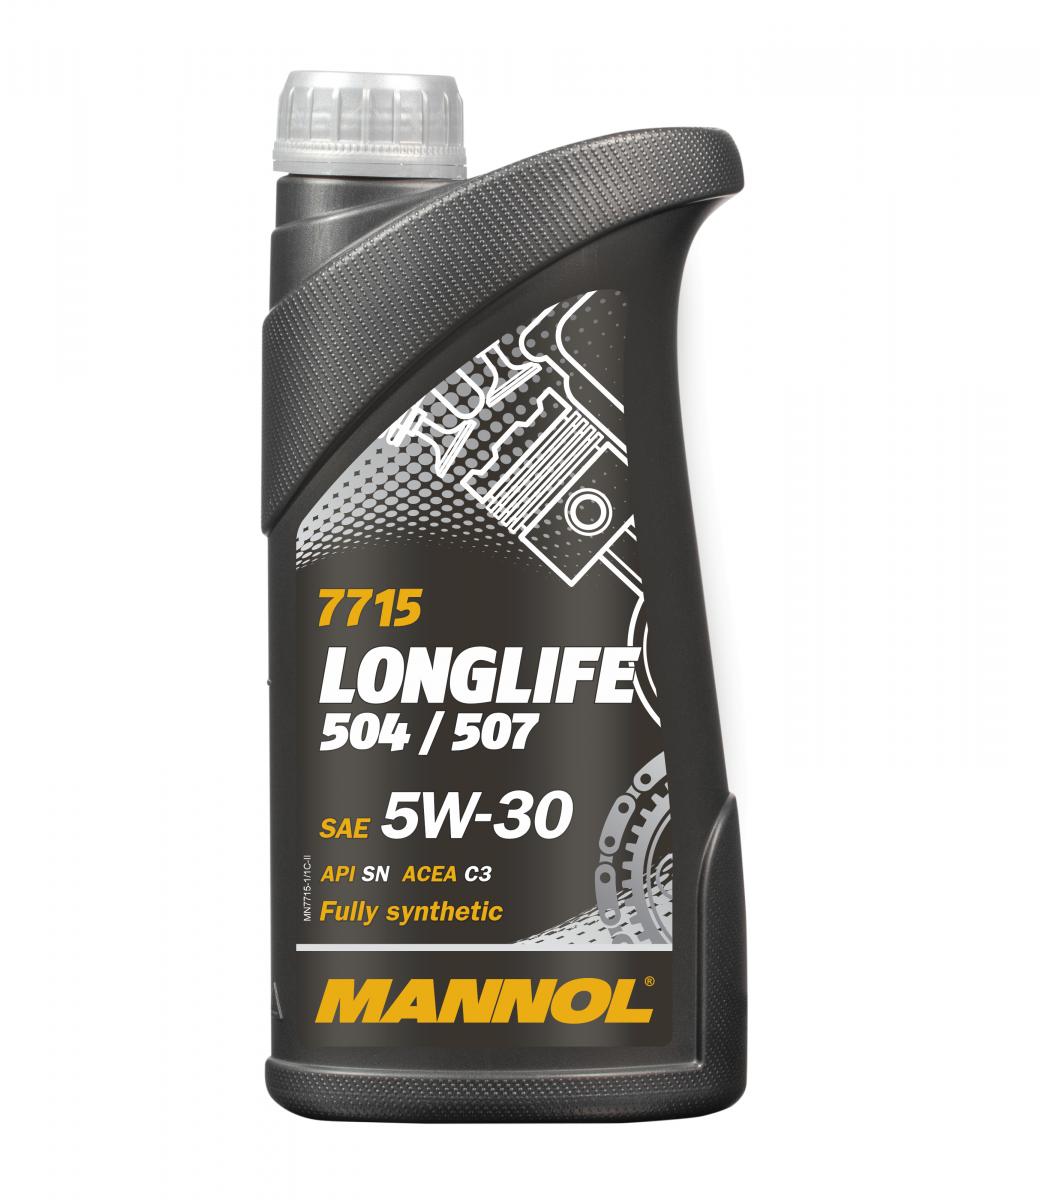 MANNOL LONGLIFE 504/507 API SN W30 - Öle und Pflegemittel für Auto, M